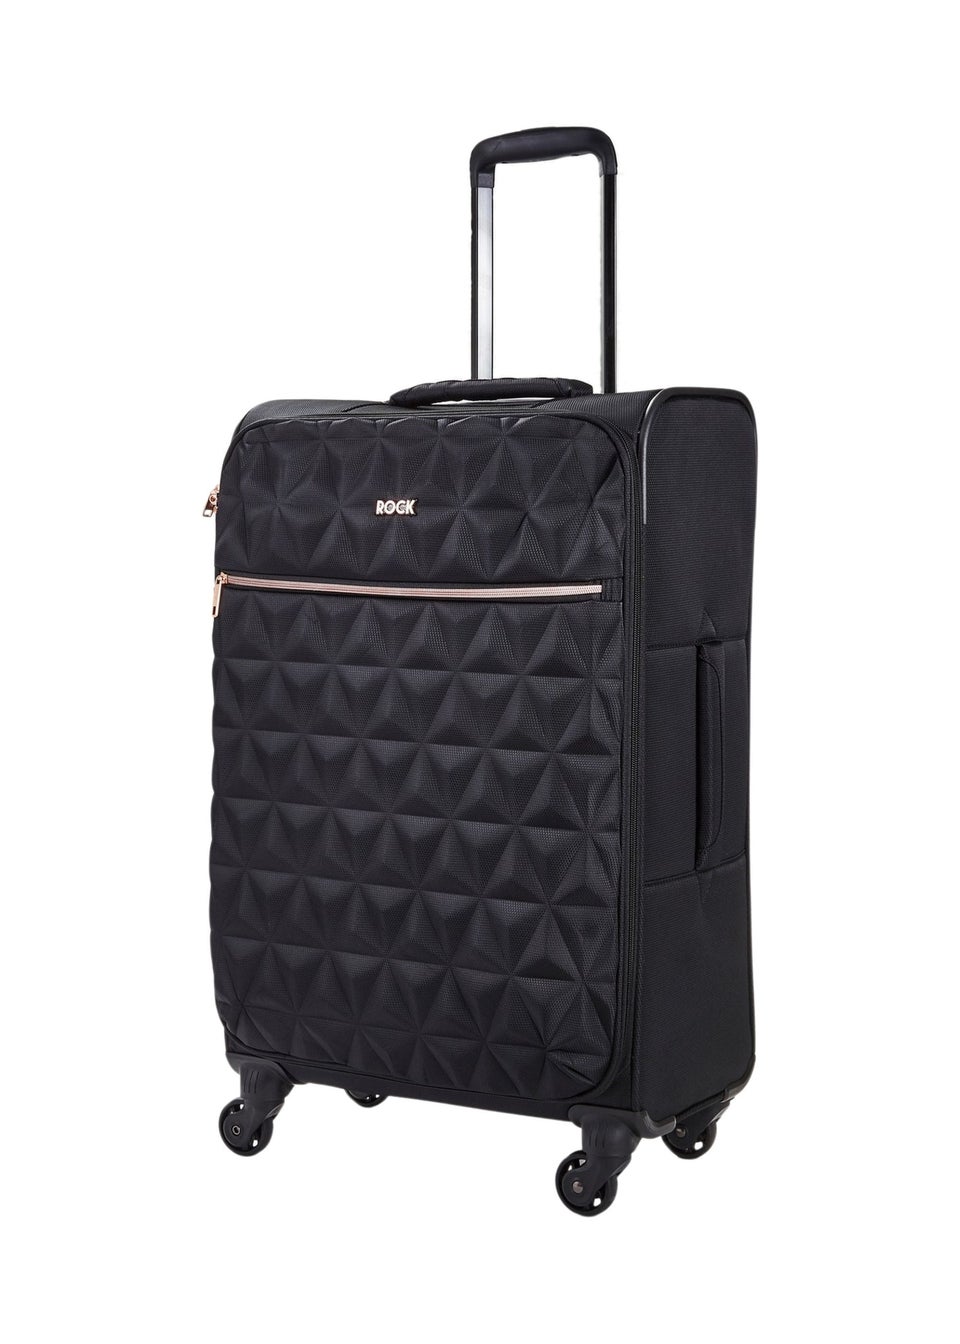 Rock Black Jewel Large Suitcase